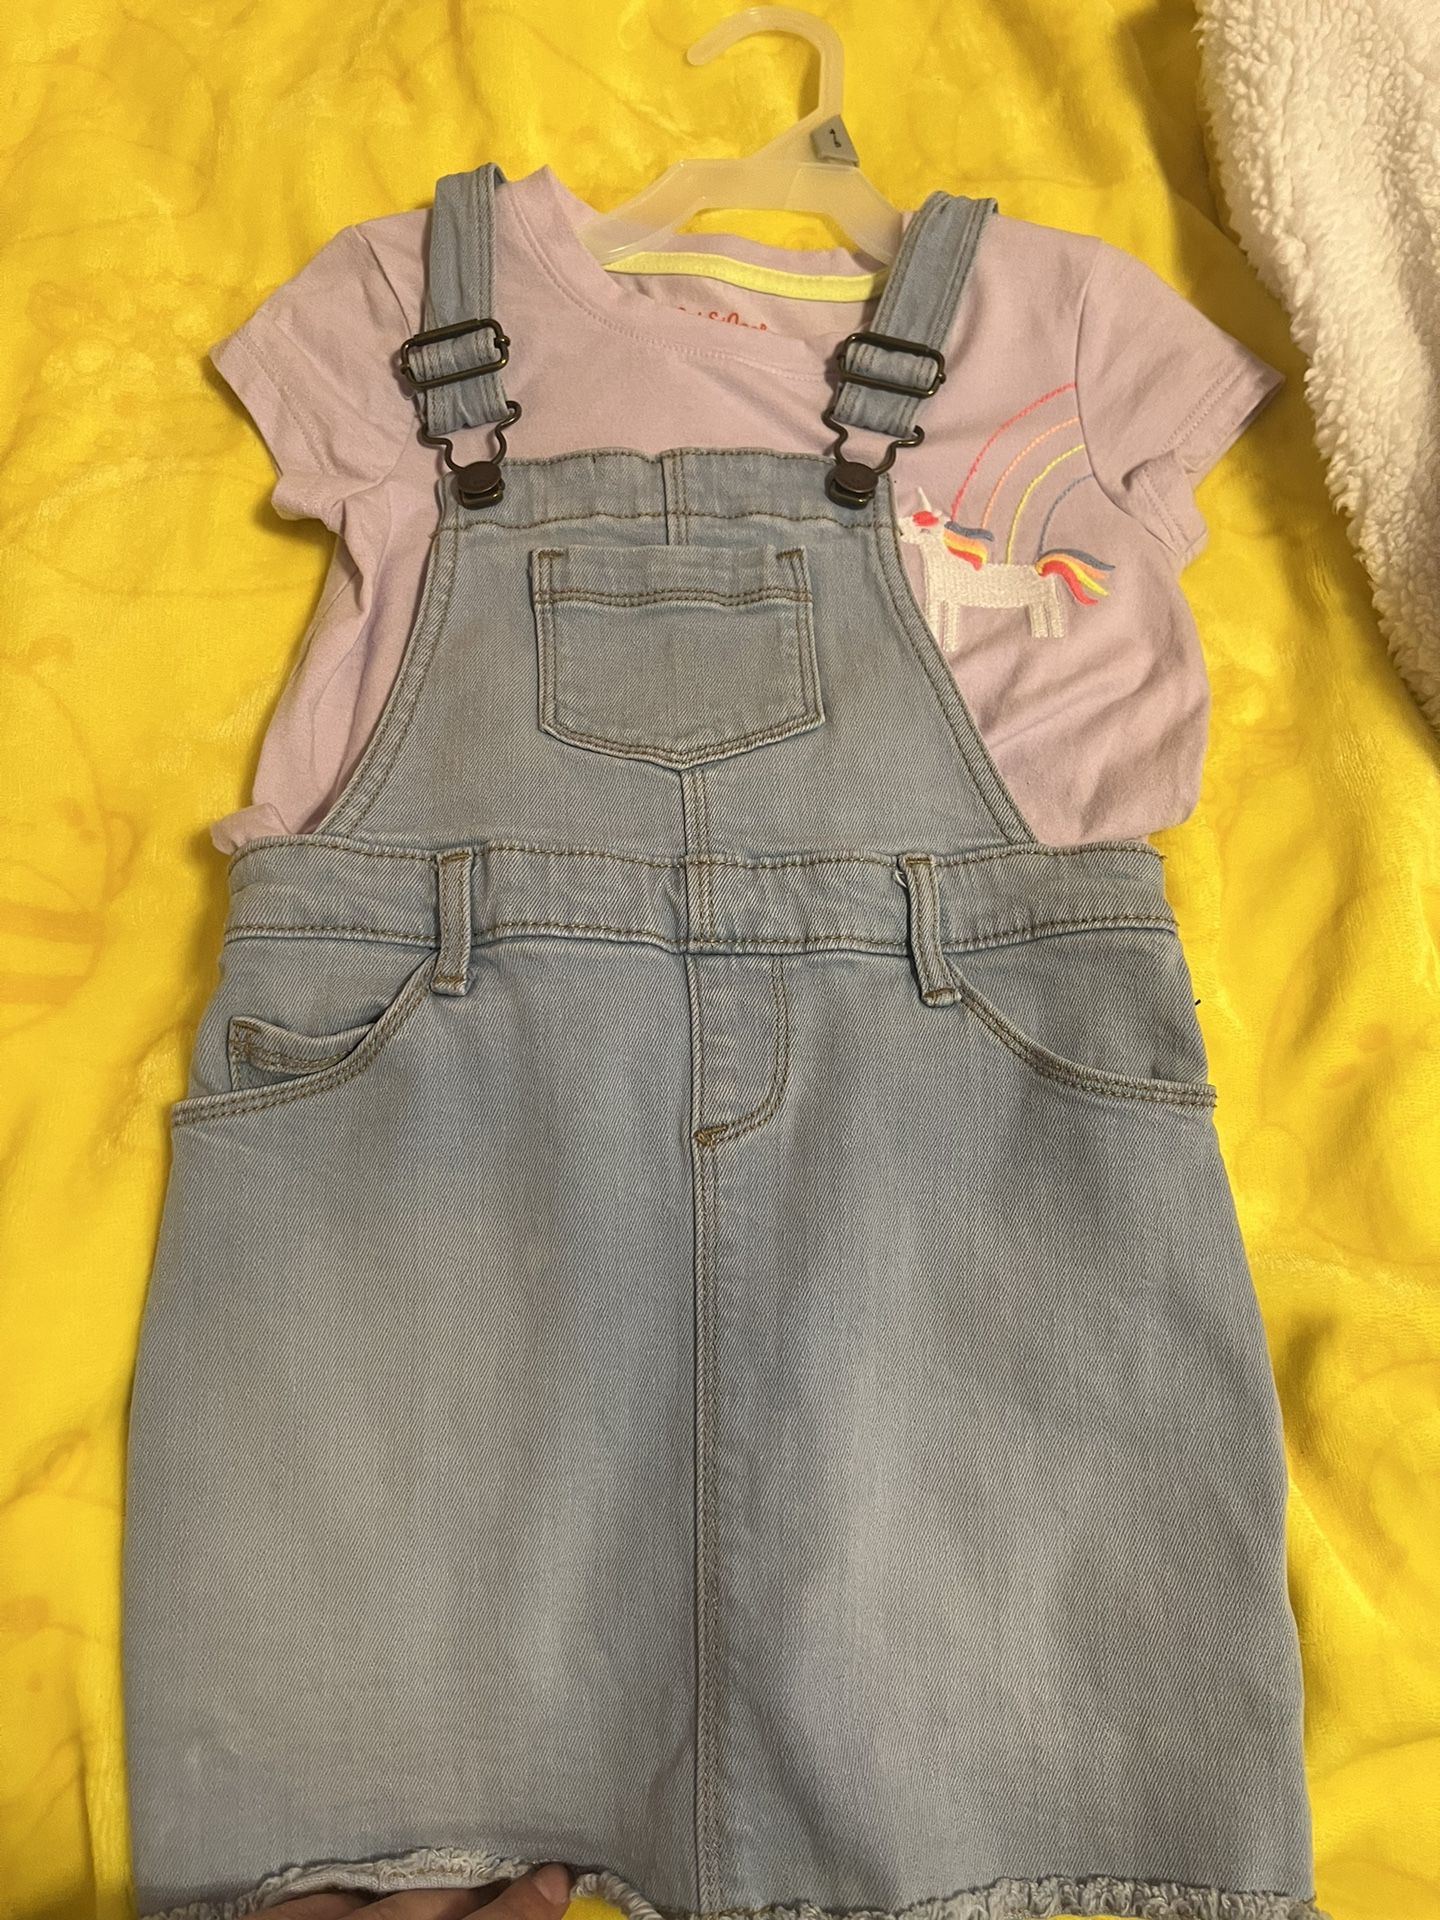 Toddler Girls Denim Overall Skirt/ Dress